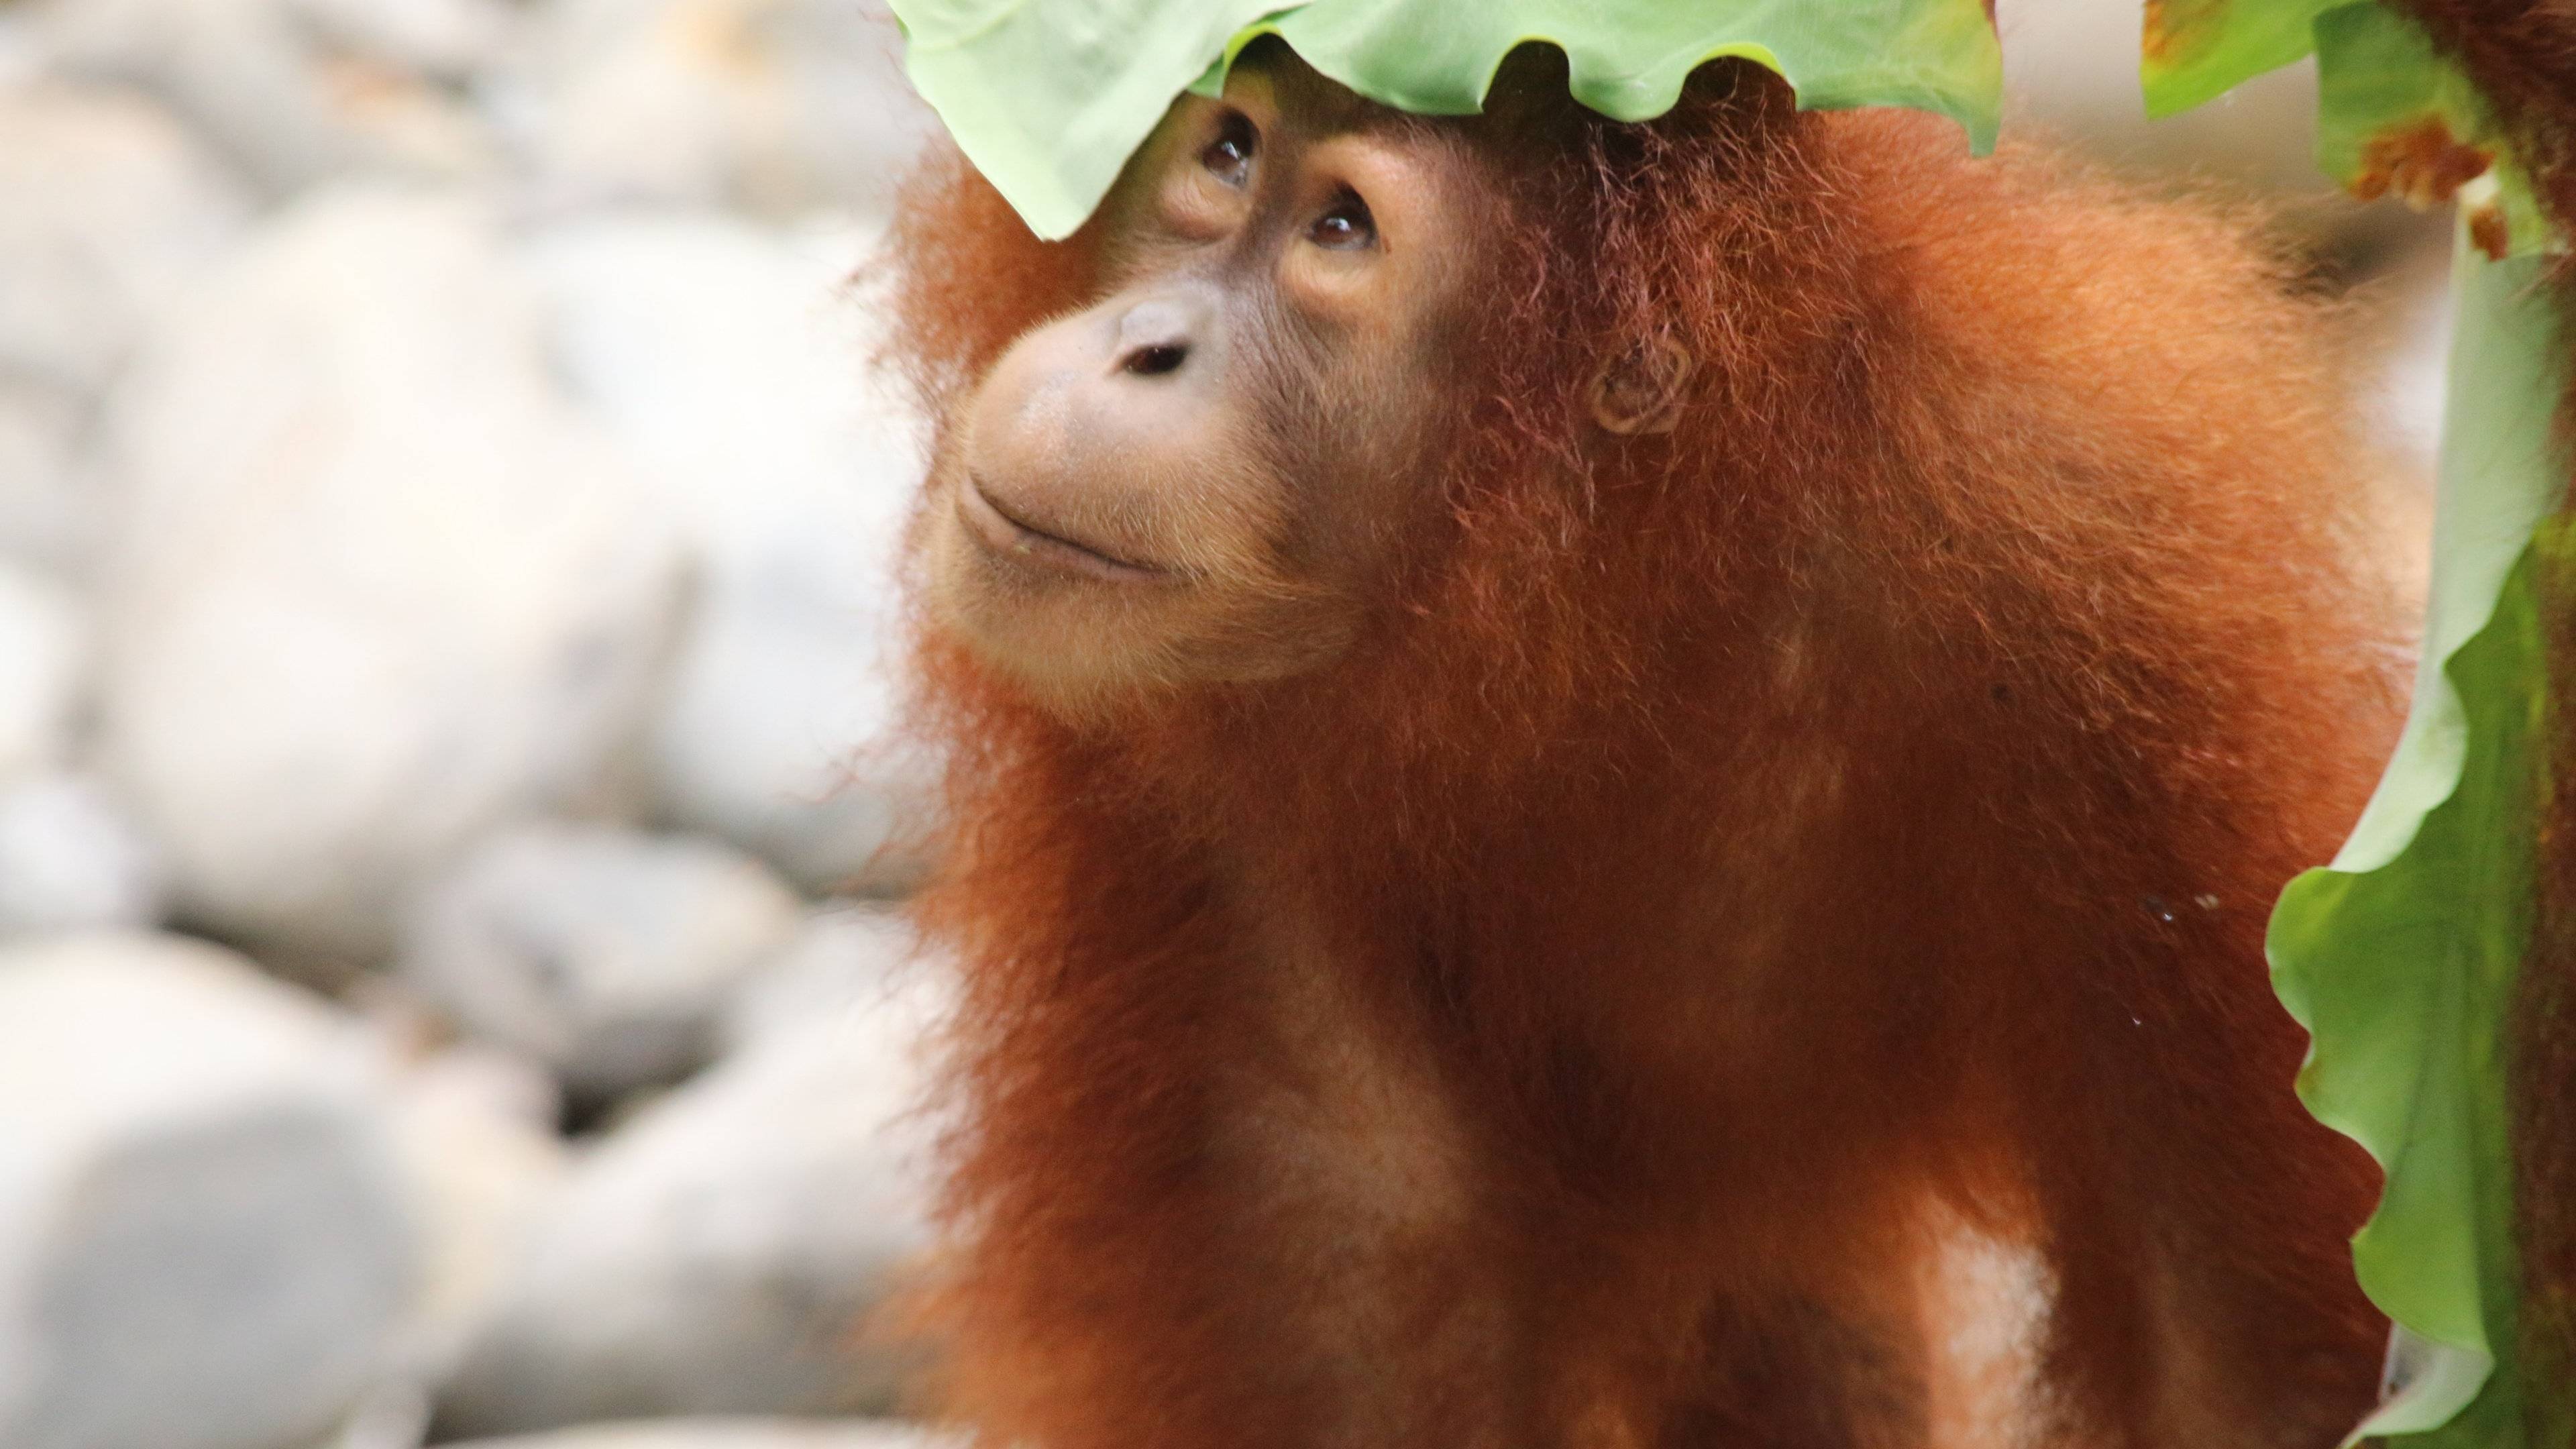 Öko-Abenteuer & Inselvielfalt: Sumatra, Java und Bali nachhaltig erkunden